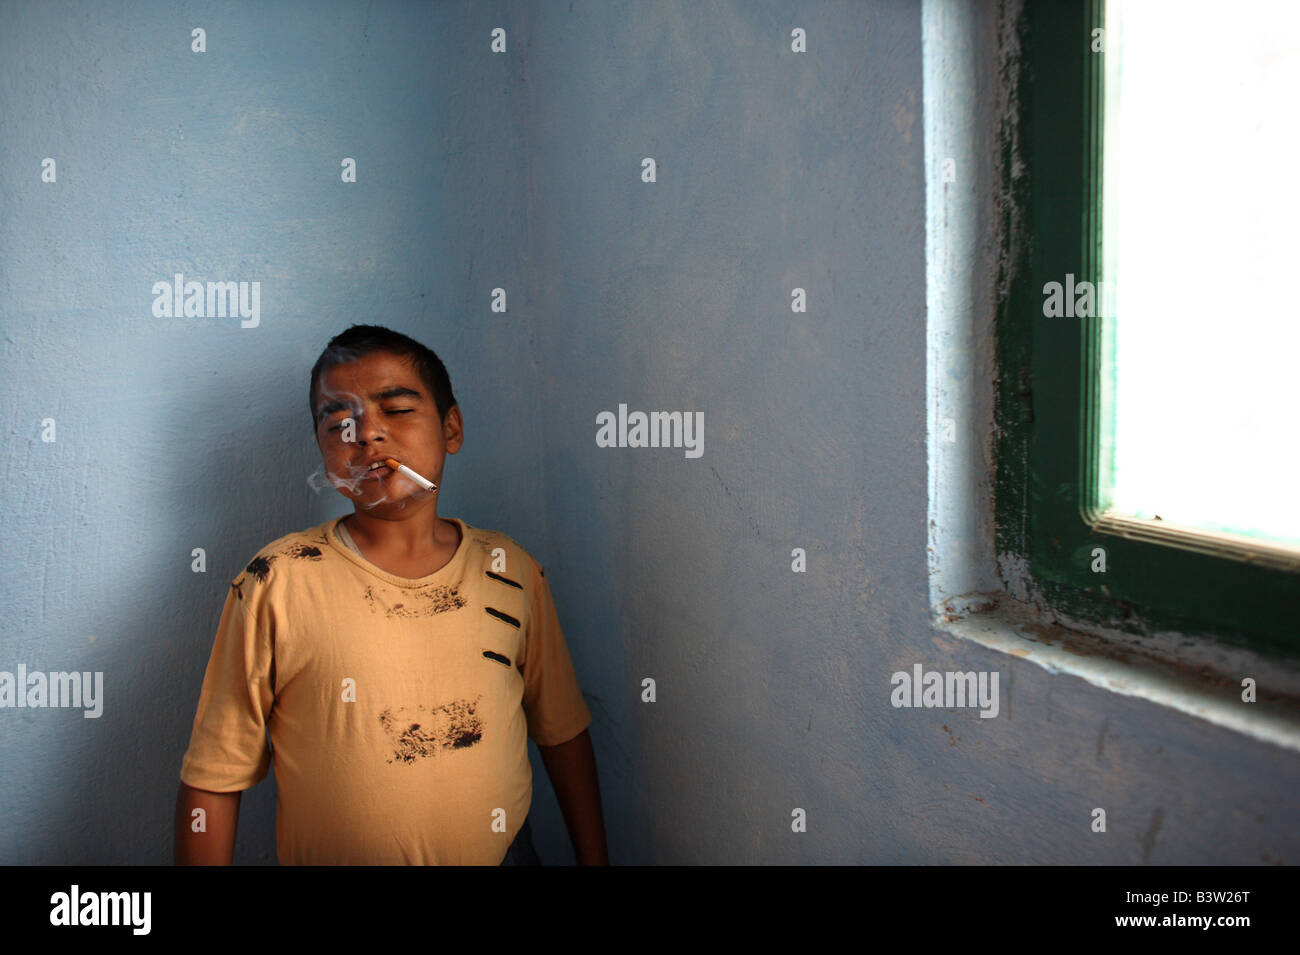 A 17 year old child prisoner smokes a cigarette in Vaqarr prison in Tirana the capital of Albania Stock Photo